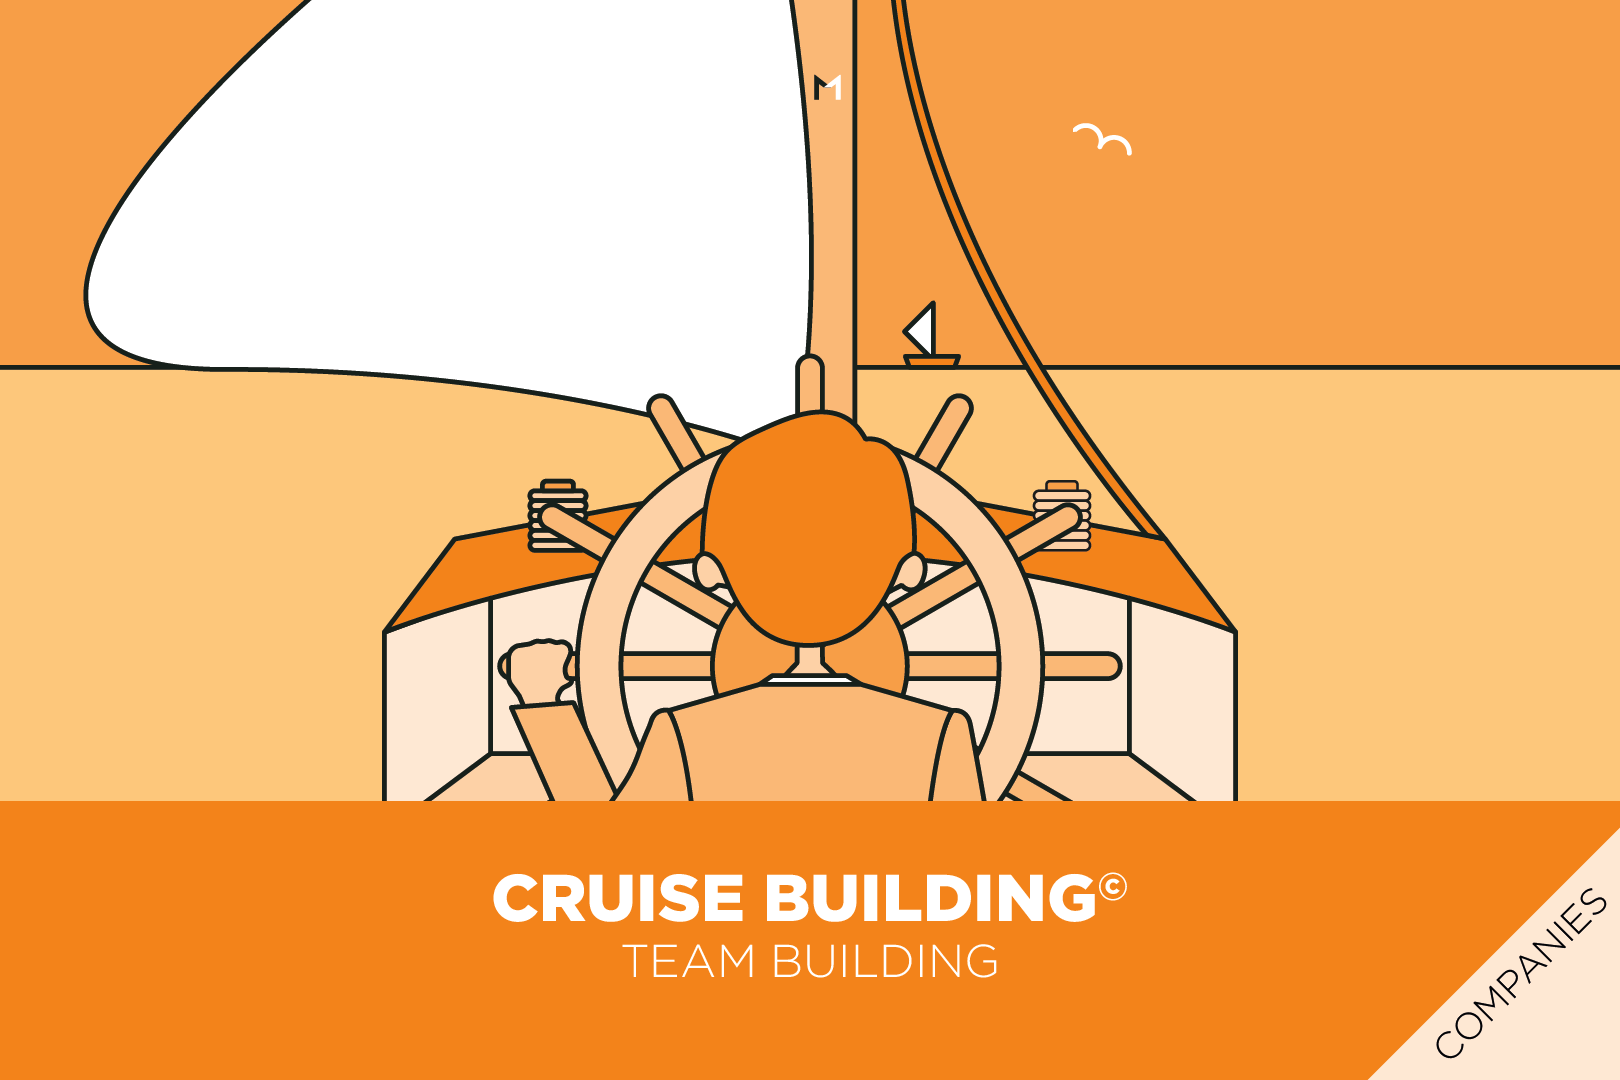 Cruise_Building_MultiOlistica_Business_Training